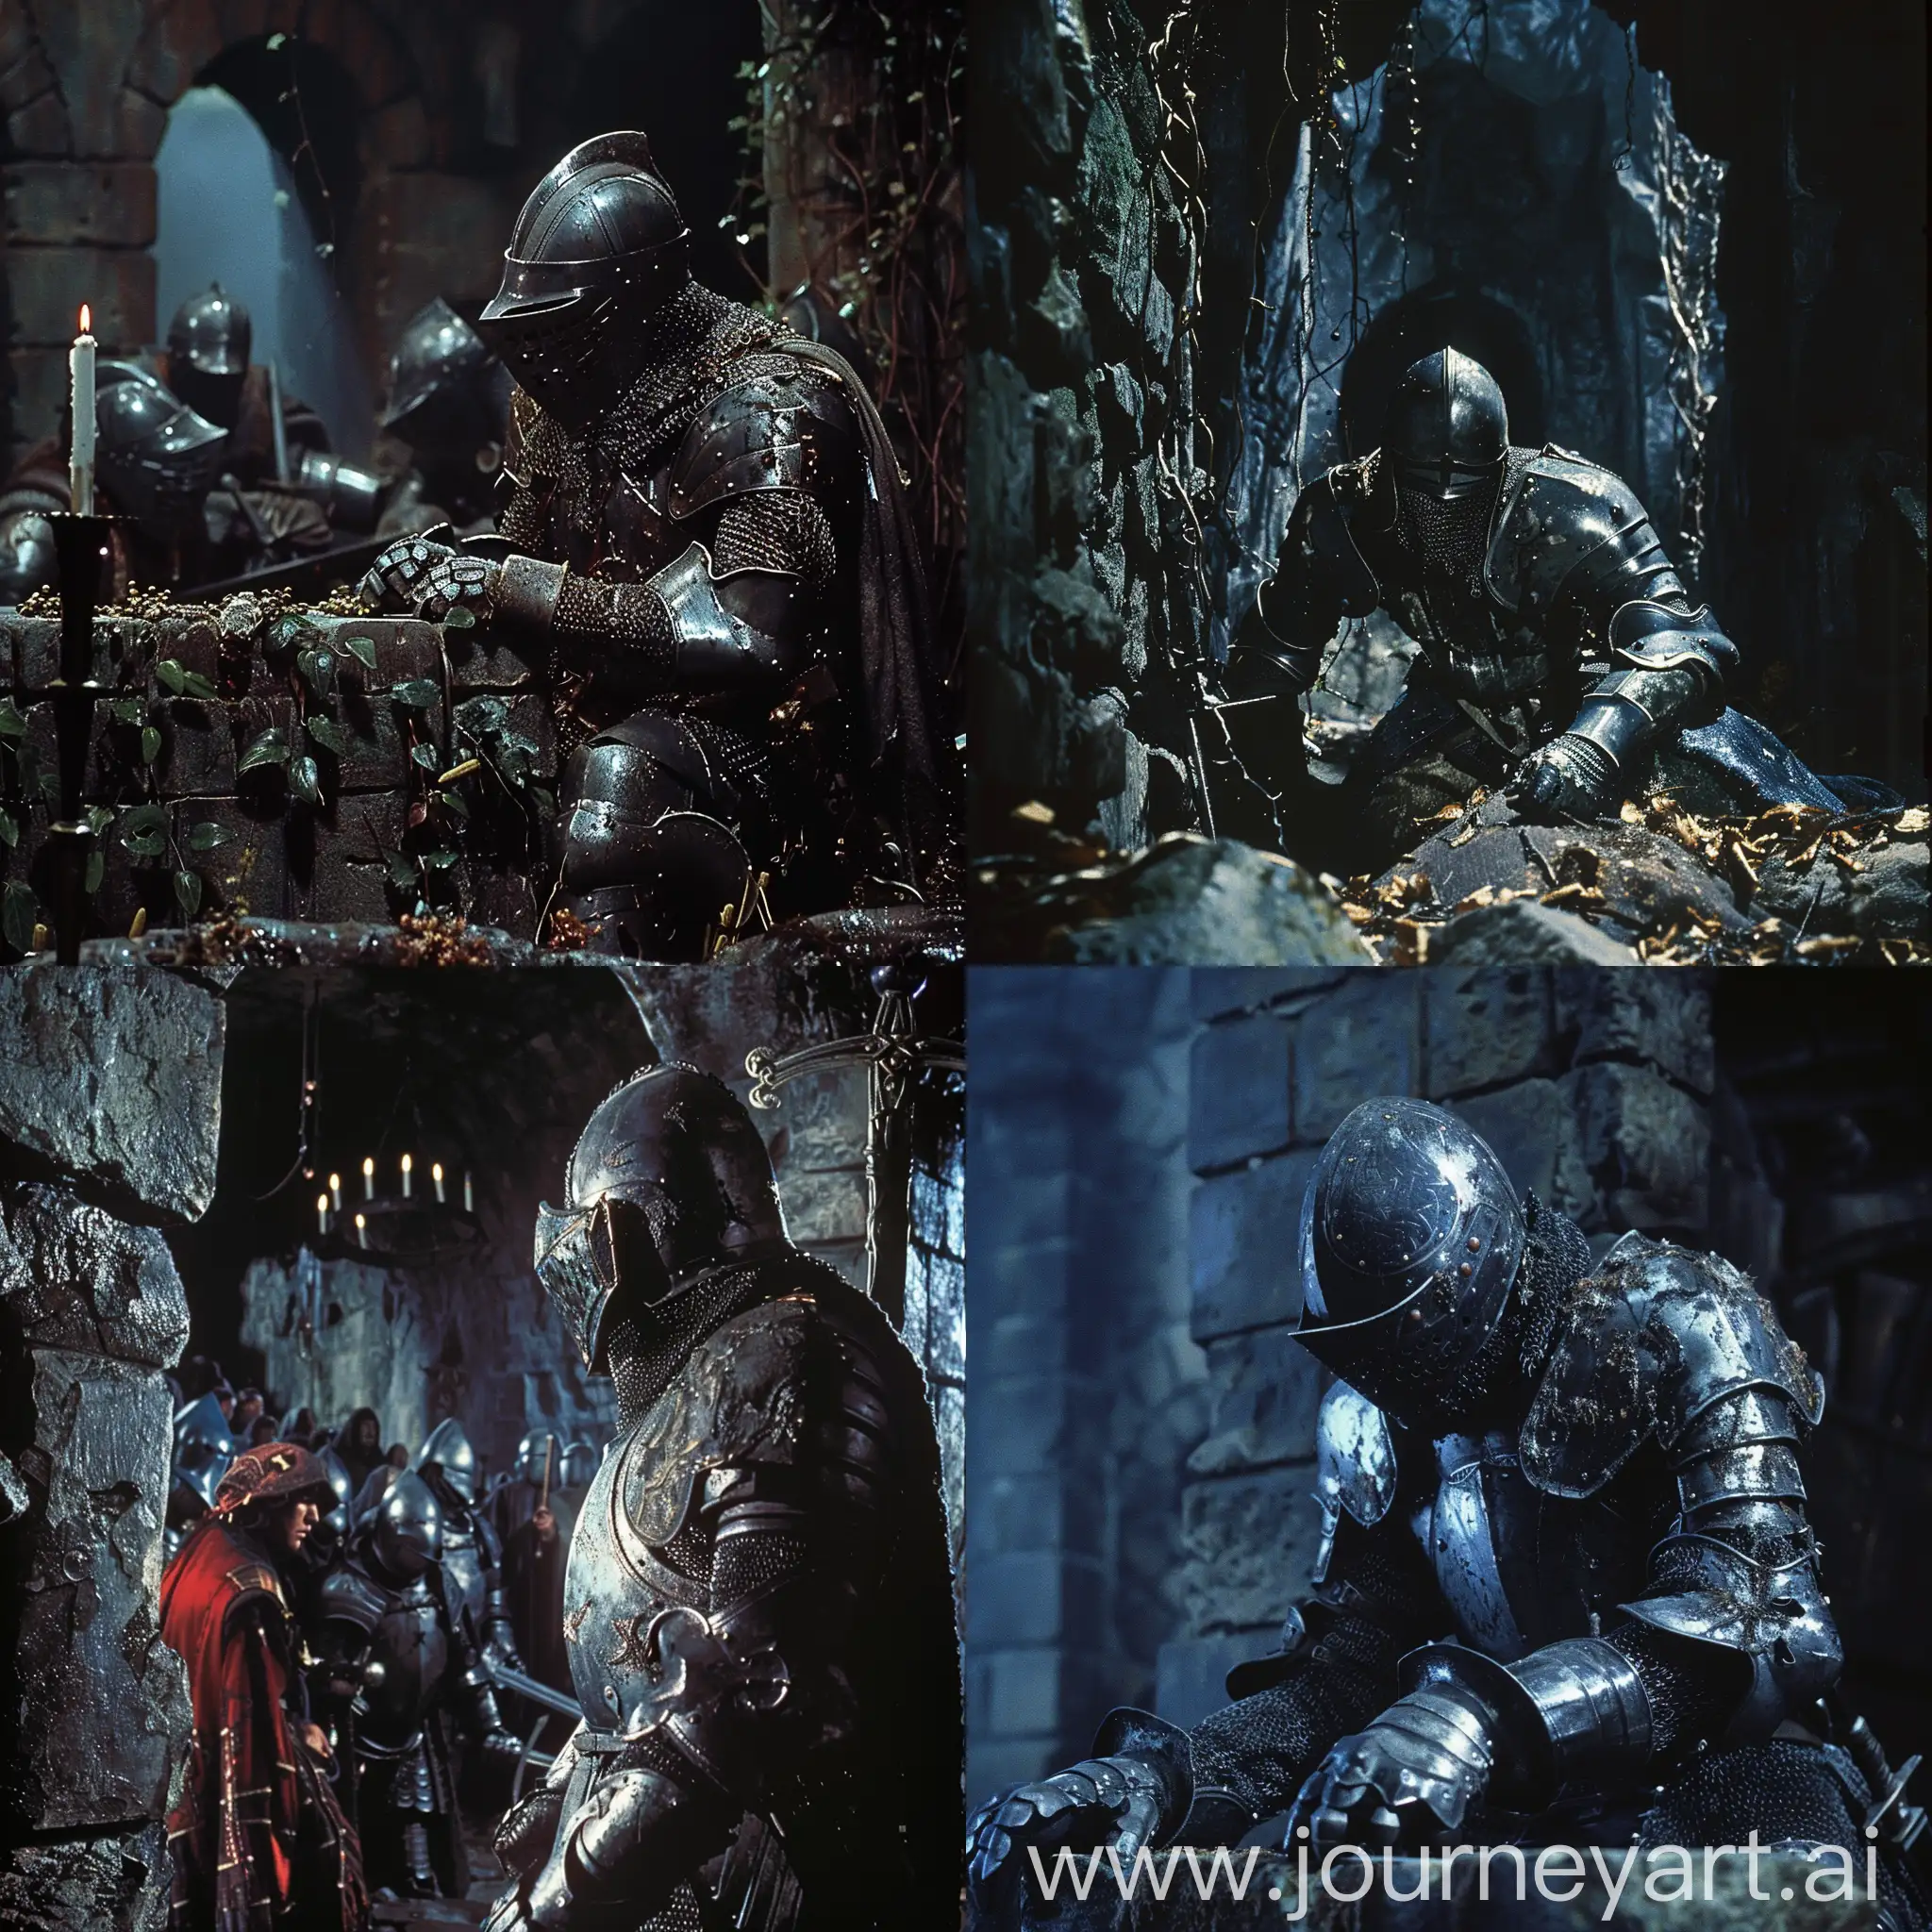 Escena cinematográfica de una película de la década de 1980s donde se observa a un caballero con armadura, en un ambiente de fantasía oscura